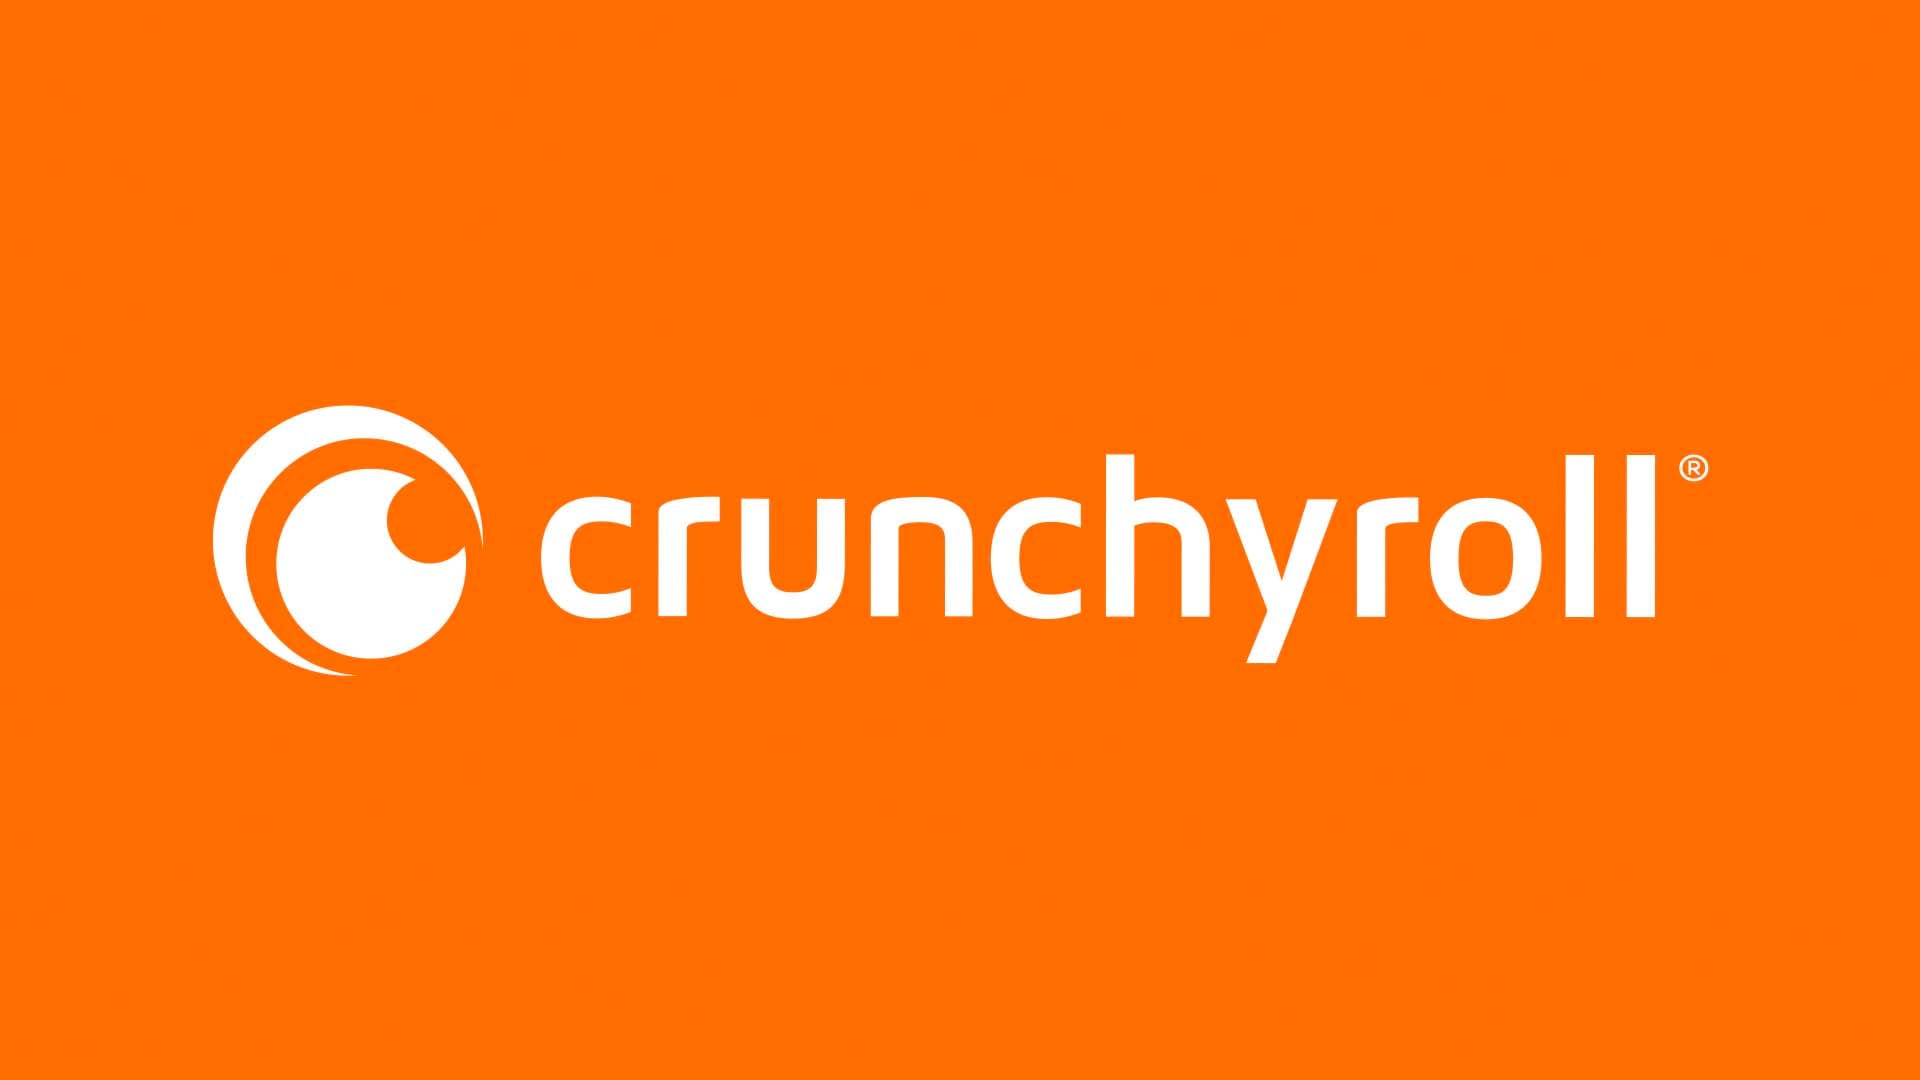 What Is Crunchyroll apk?